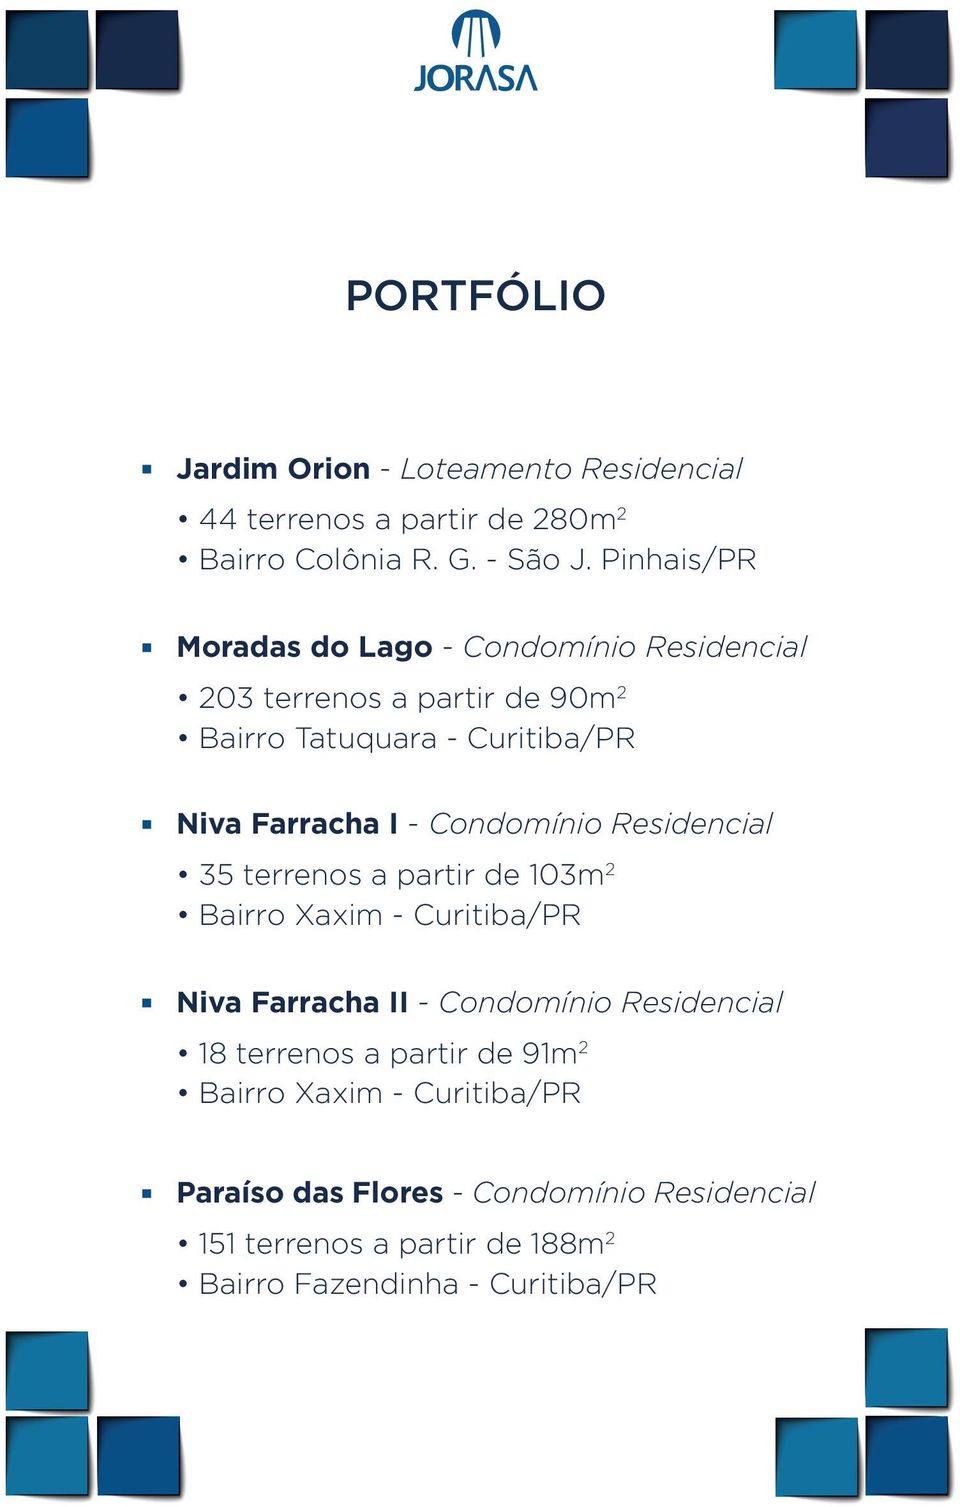 Condomínio Residencial 35 terrenos a partir de 103m 2 Bairro Xaxim - Curitiba/PR Niva Farracha II - Condomínio Residencial 18